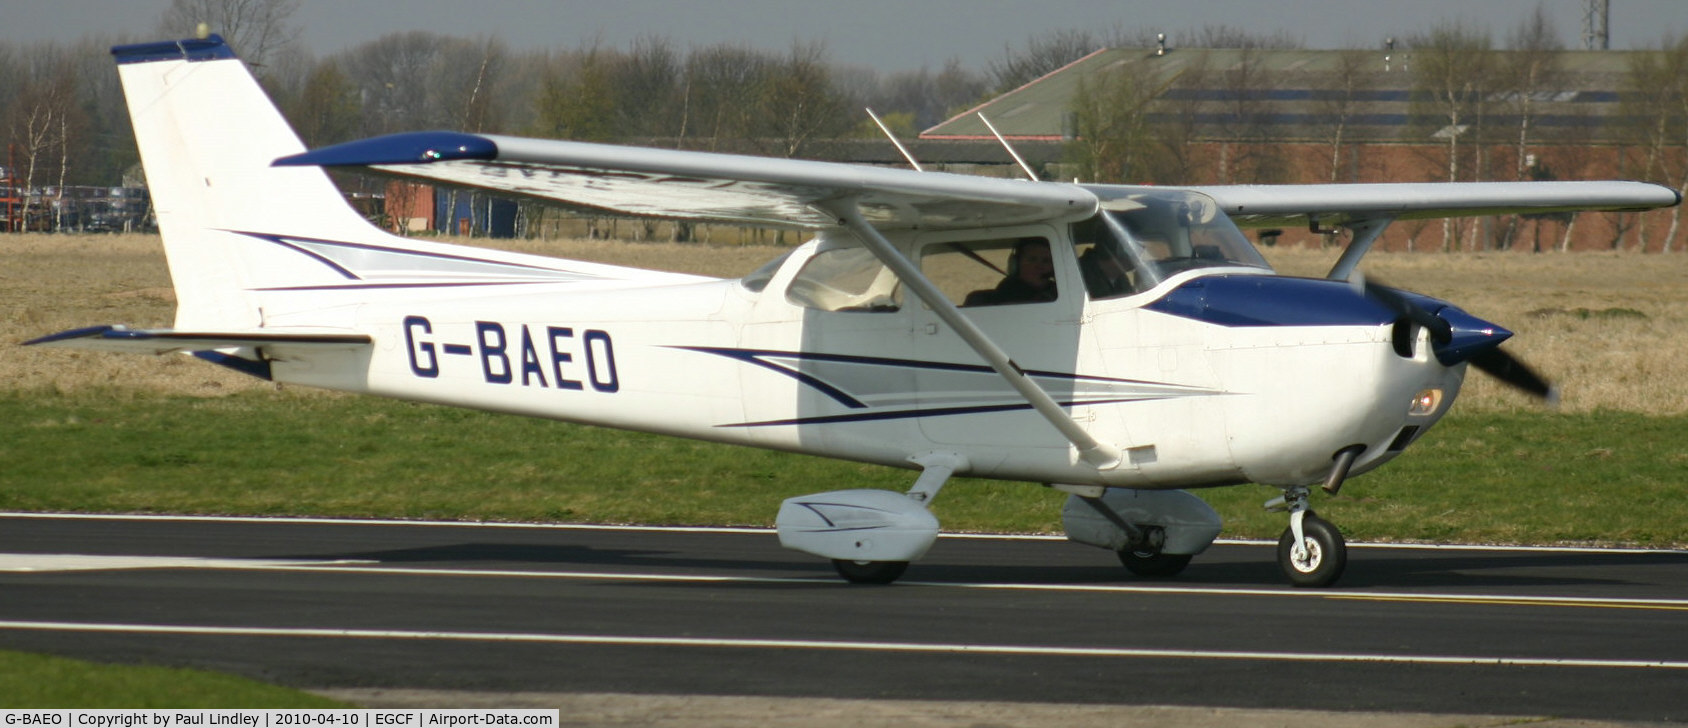 G-BAEO, 1973 Reims F172M Skyhawk Skyhawk C/N 0911, Piloted by my Friend Trev Marshall